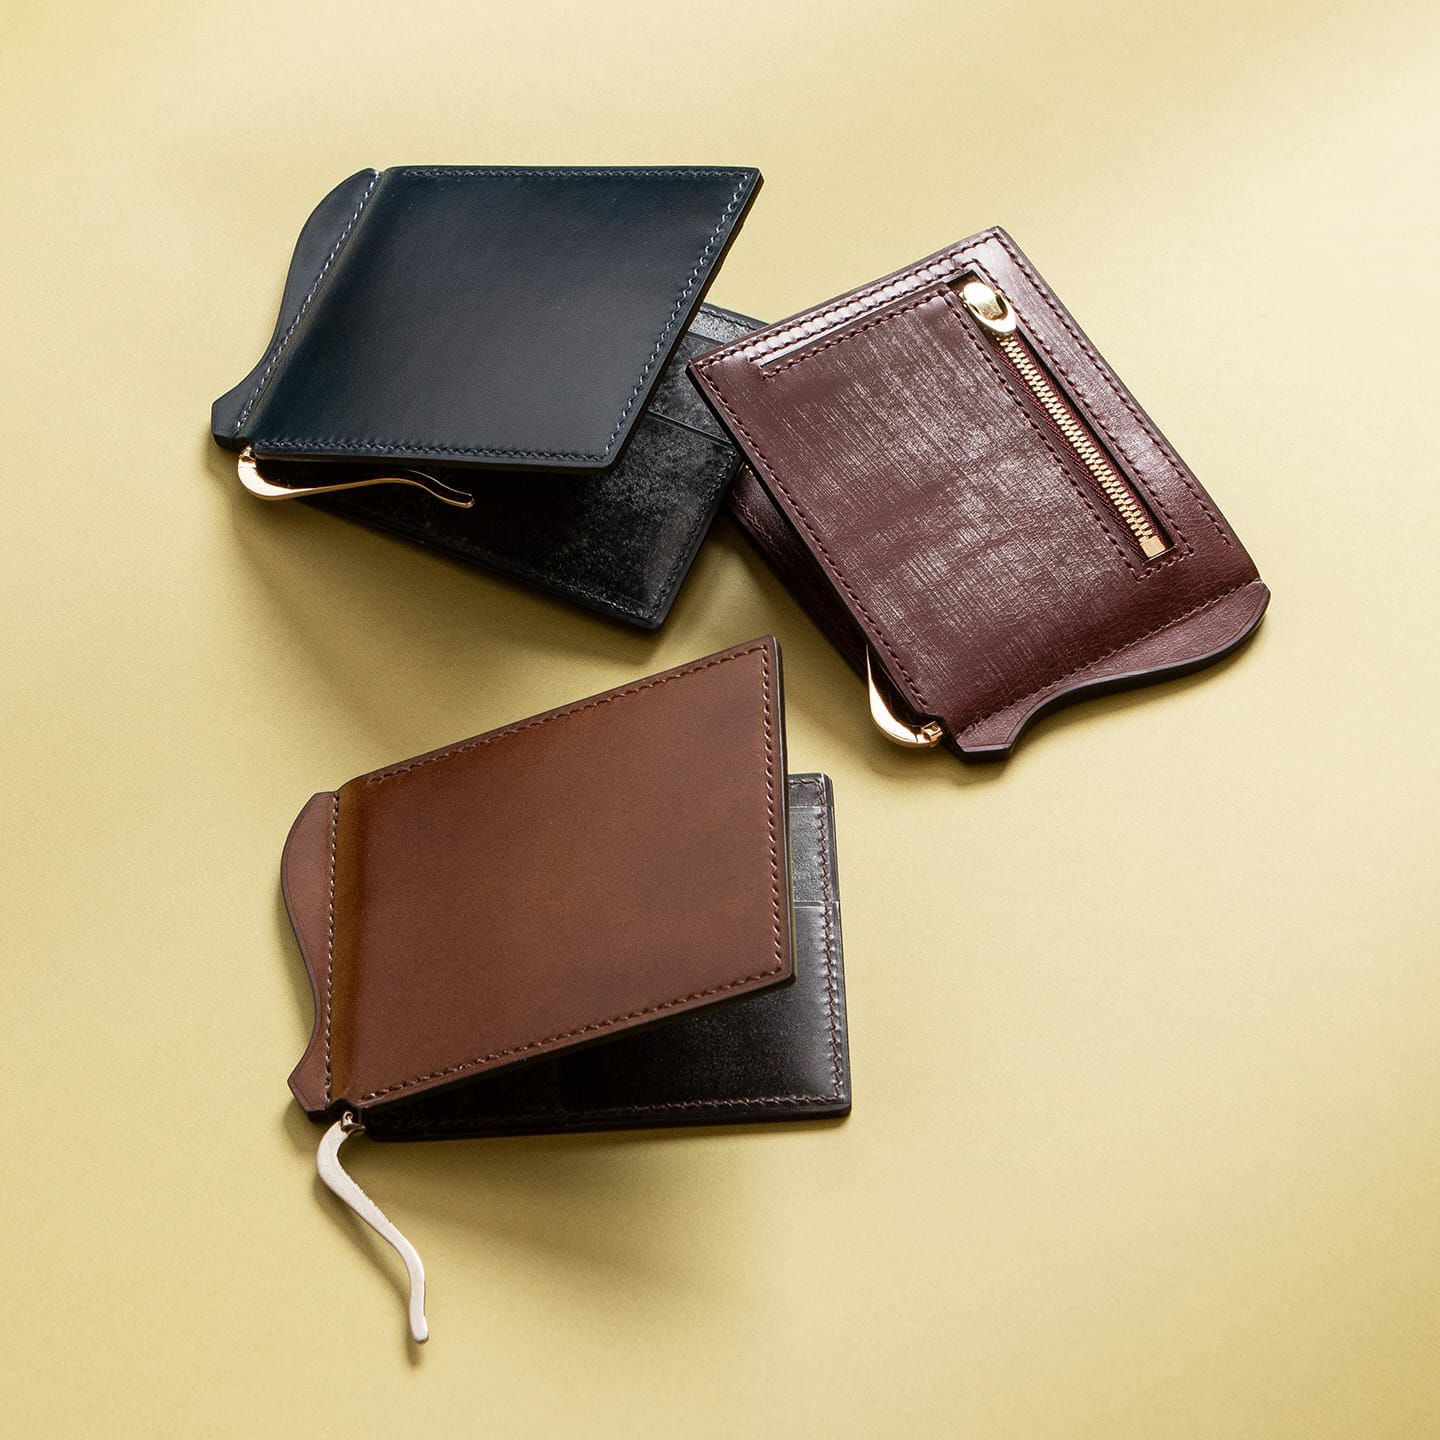 【特注オリジナル財布】 コードバン 折り財布  マネークリップ 手縫いナチュラル送料込みの価格となります